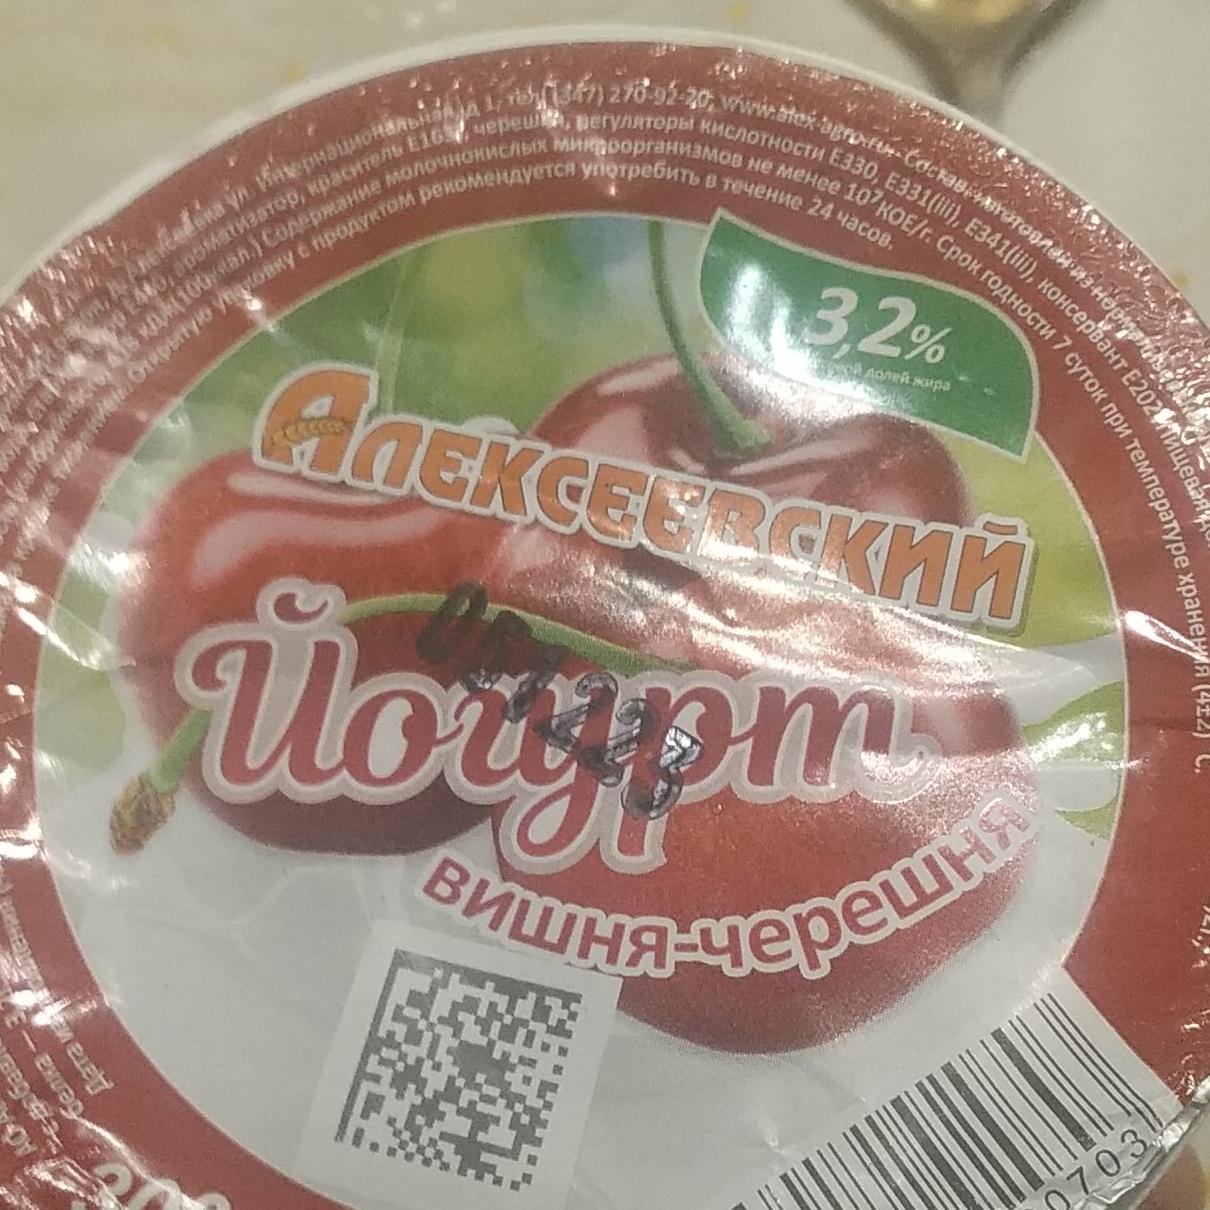 Фото - йогурт вишня-черешня Алексеевский